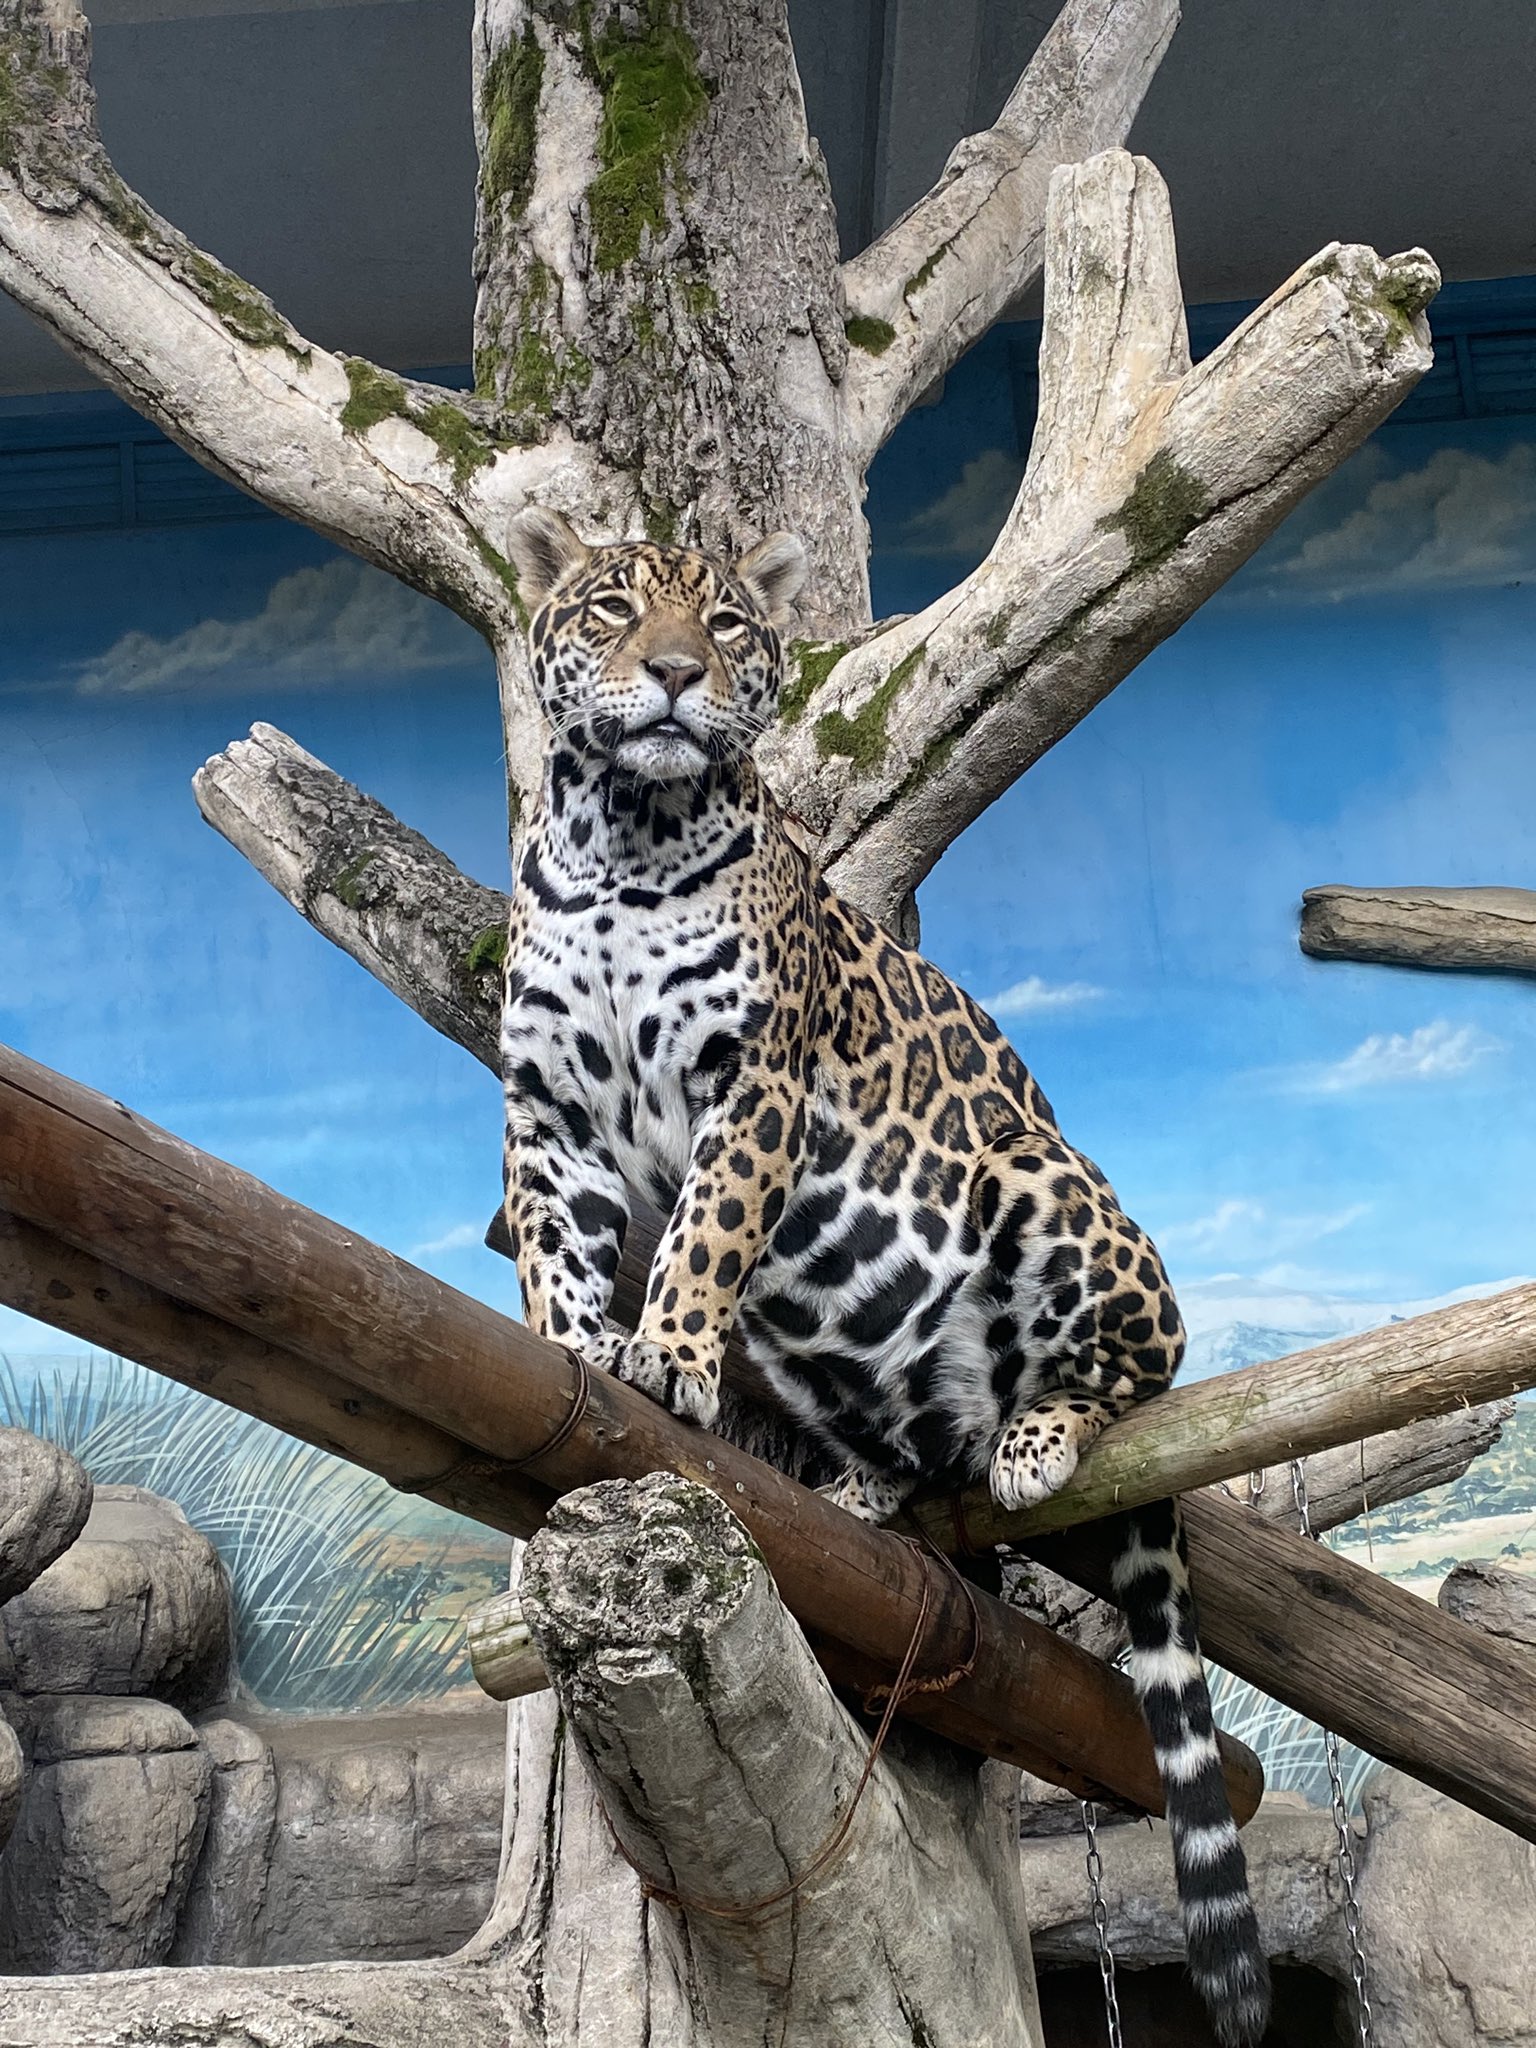 動物園写真家 阪田真一 サカタシンイチ 天王寺動物園のジャガーさん カッコいいですよね 横顔に牙 ジャガー ってイメージしませんか 天王寺動物園のジャガーさんはガラスの映り込みもカッコよく撮れるんですよね 天王寺動物園 ジャガー 動物園